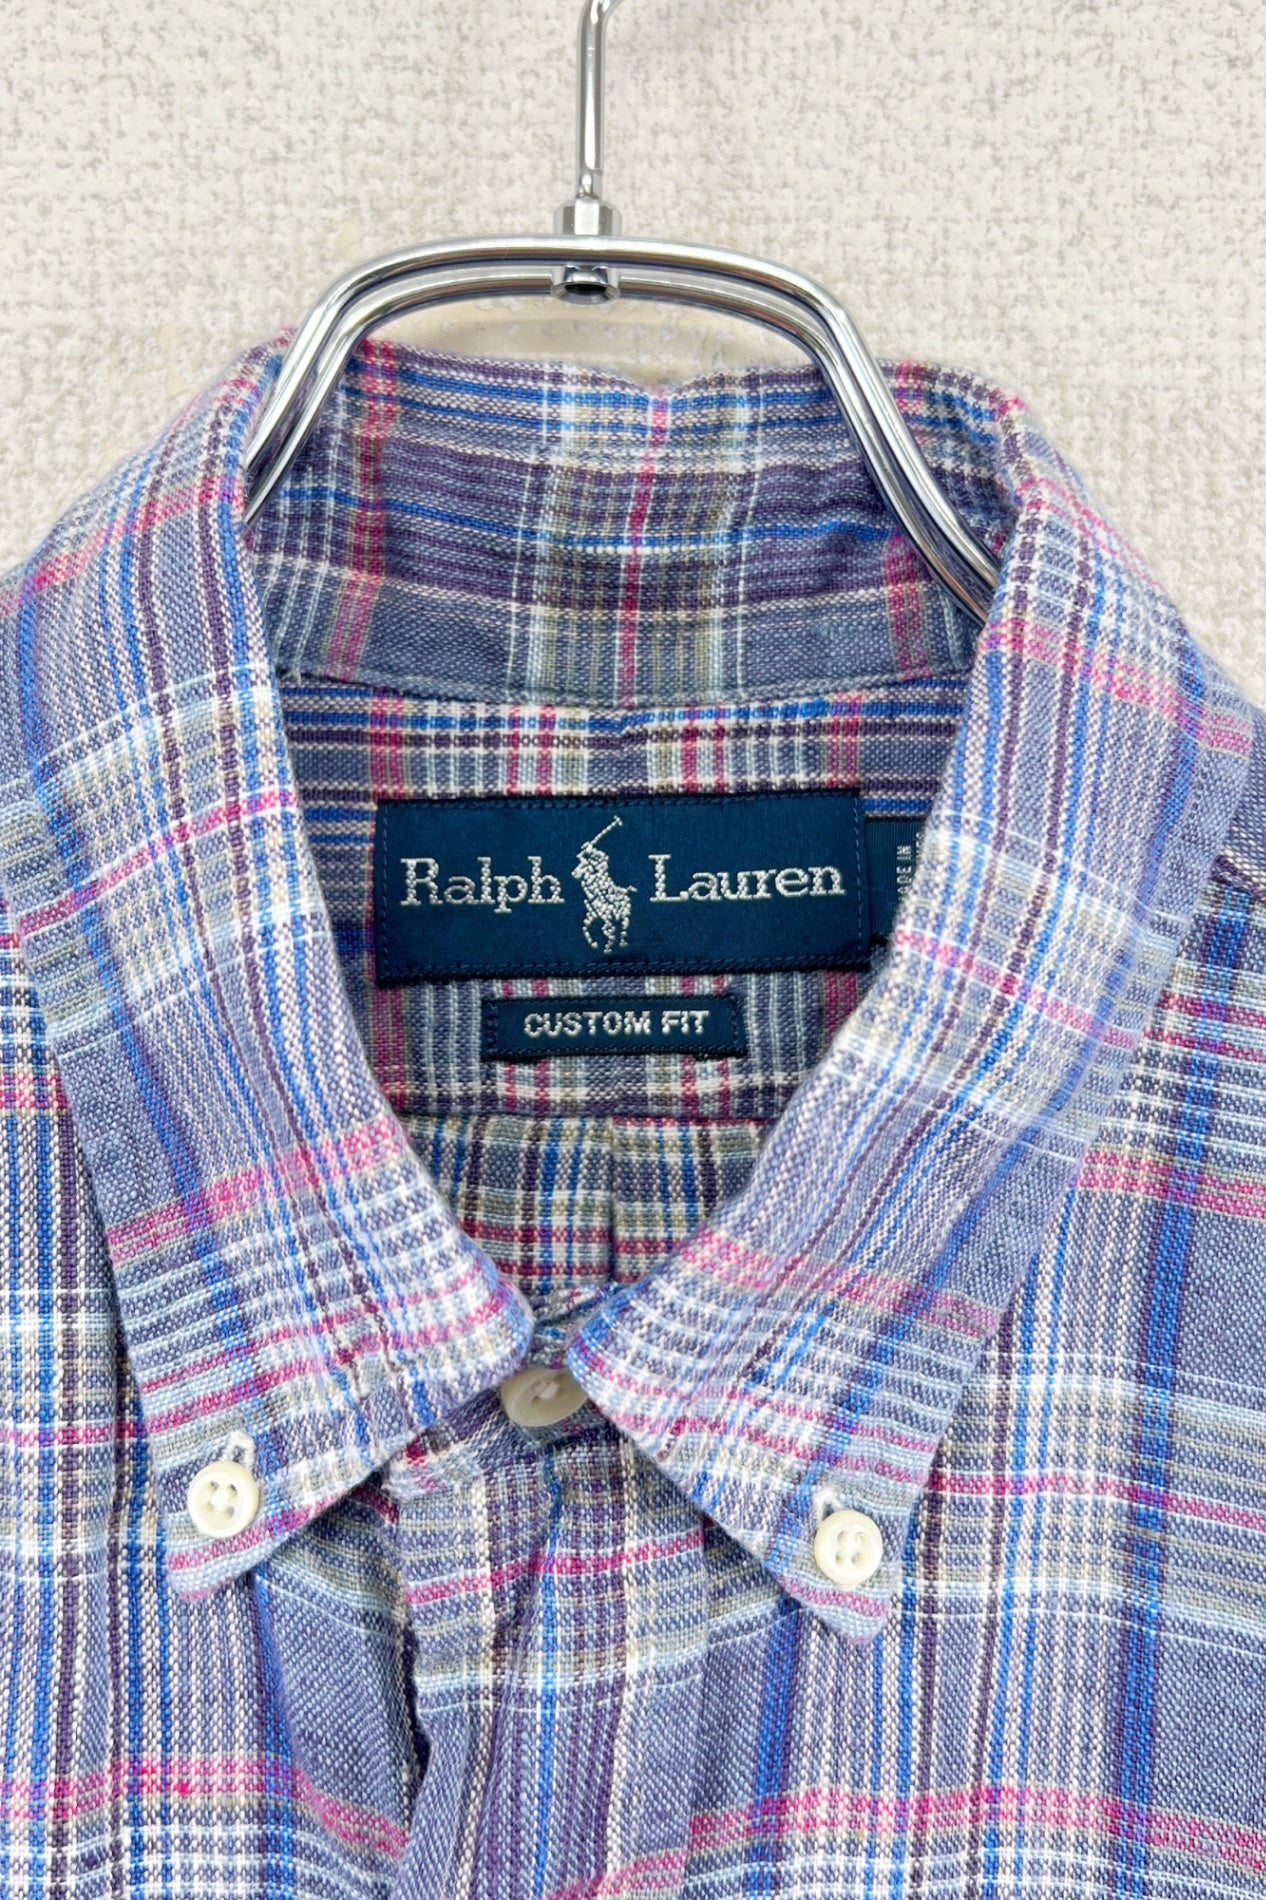 90's Ralph Lauren linen check shirt